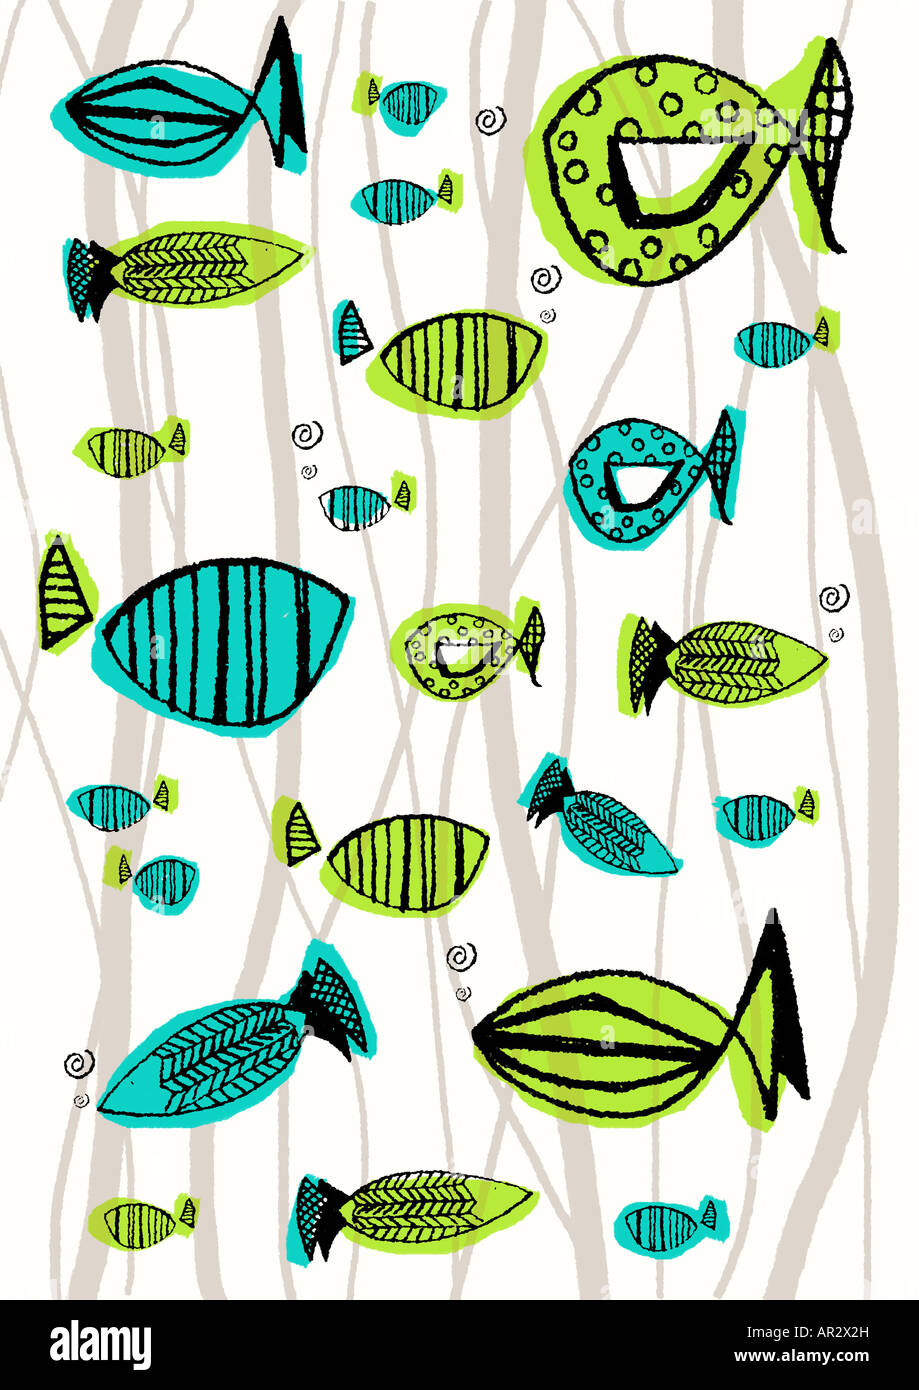 Illustration de style rétro de poissons Banque D'Images